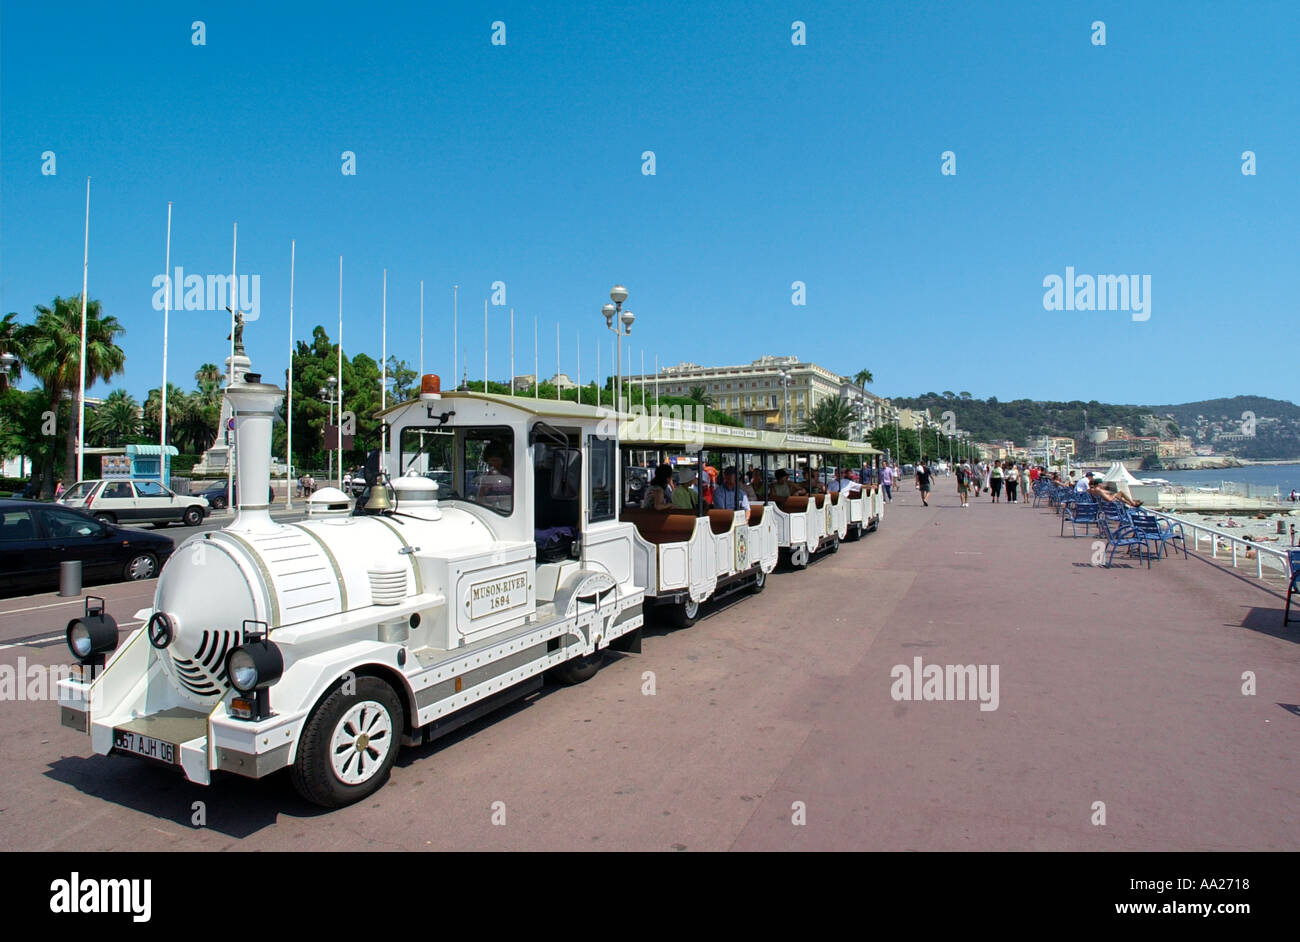 Train touristique/tramway sur la Promenade des Anglais, Nice, France Banque D'Images